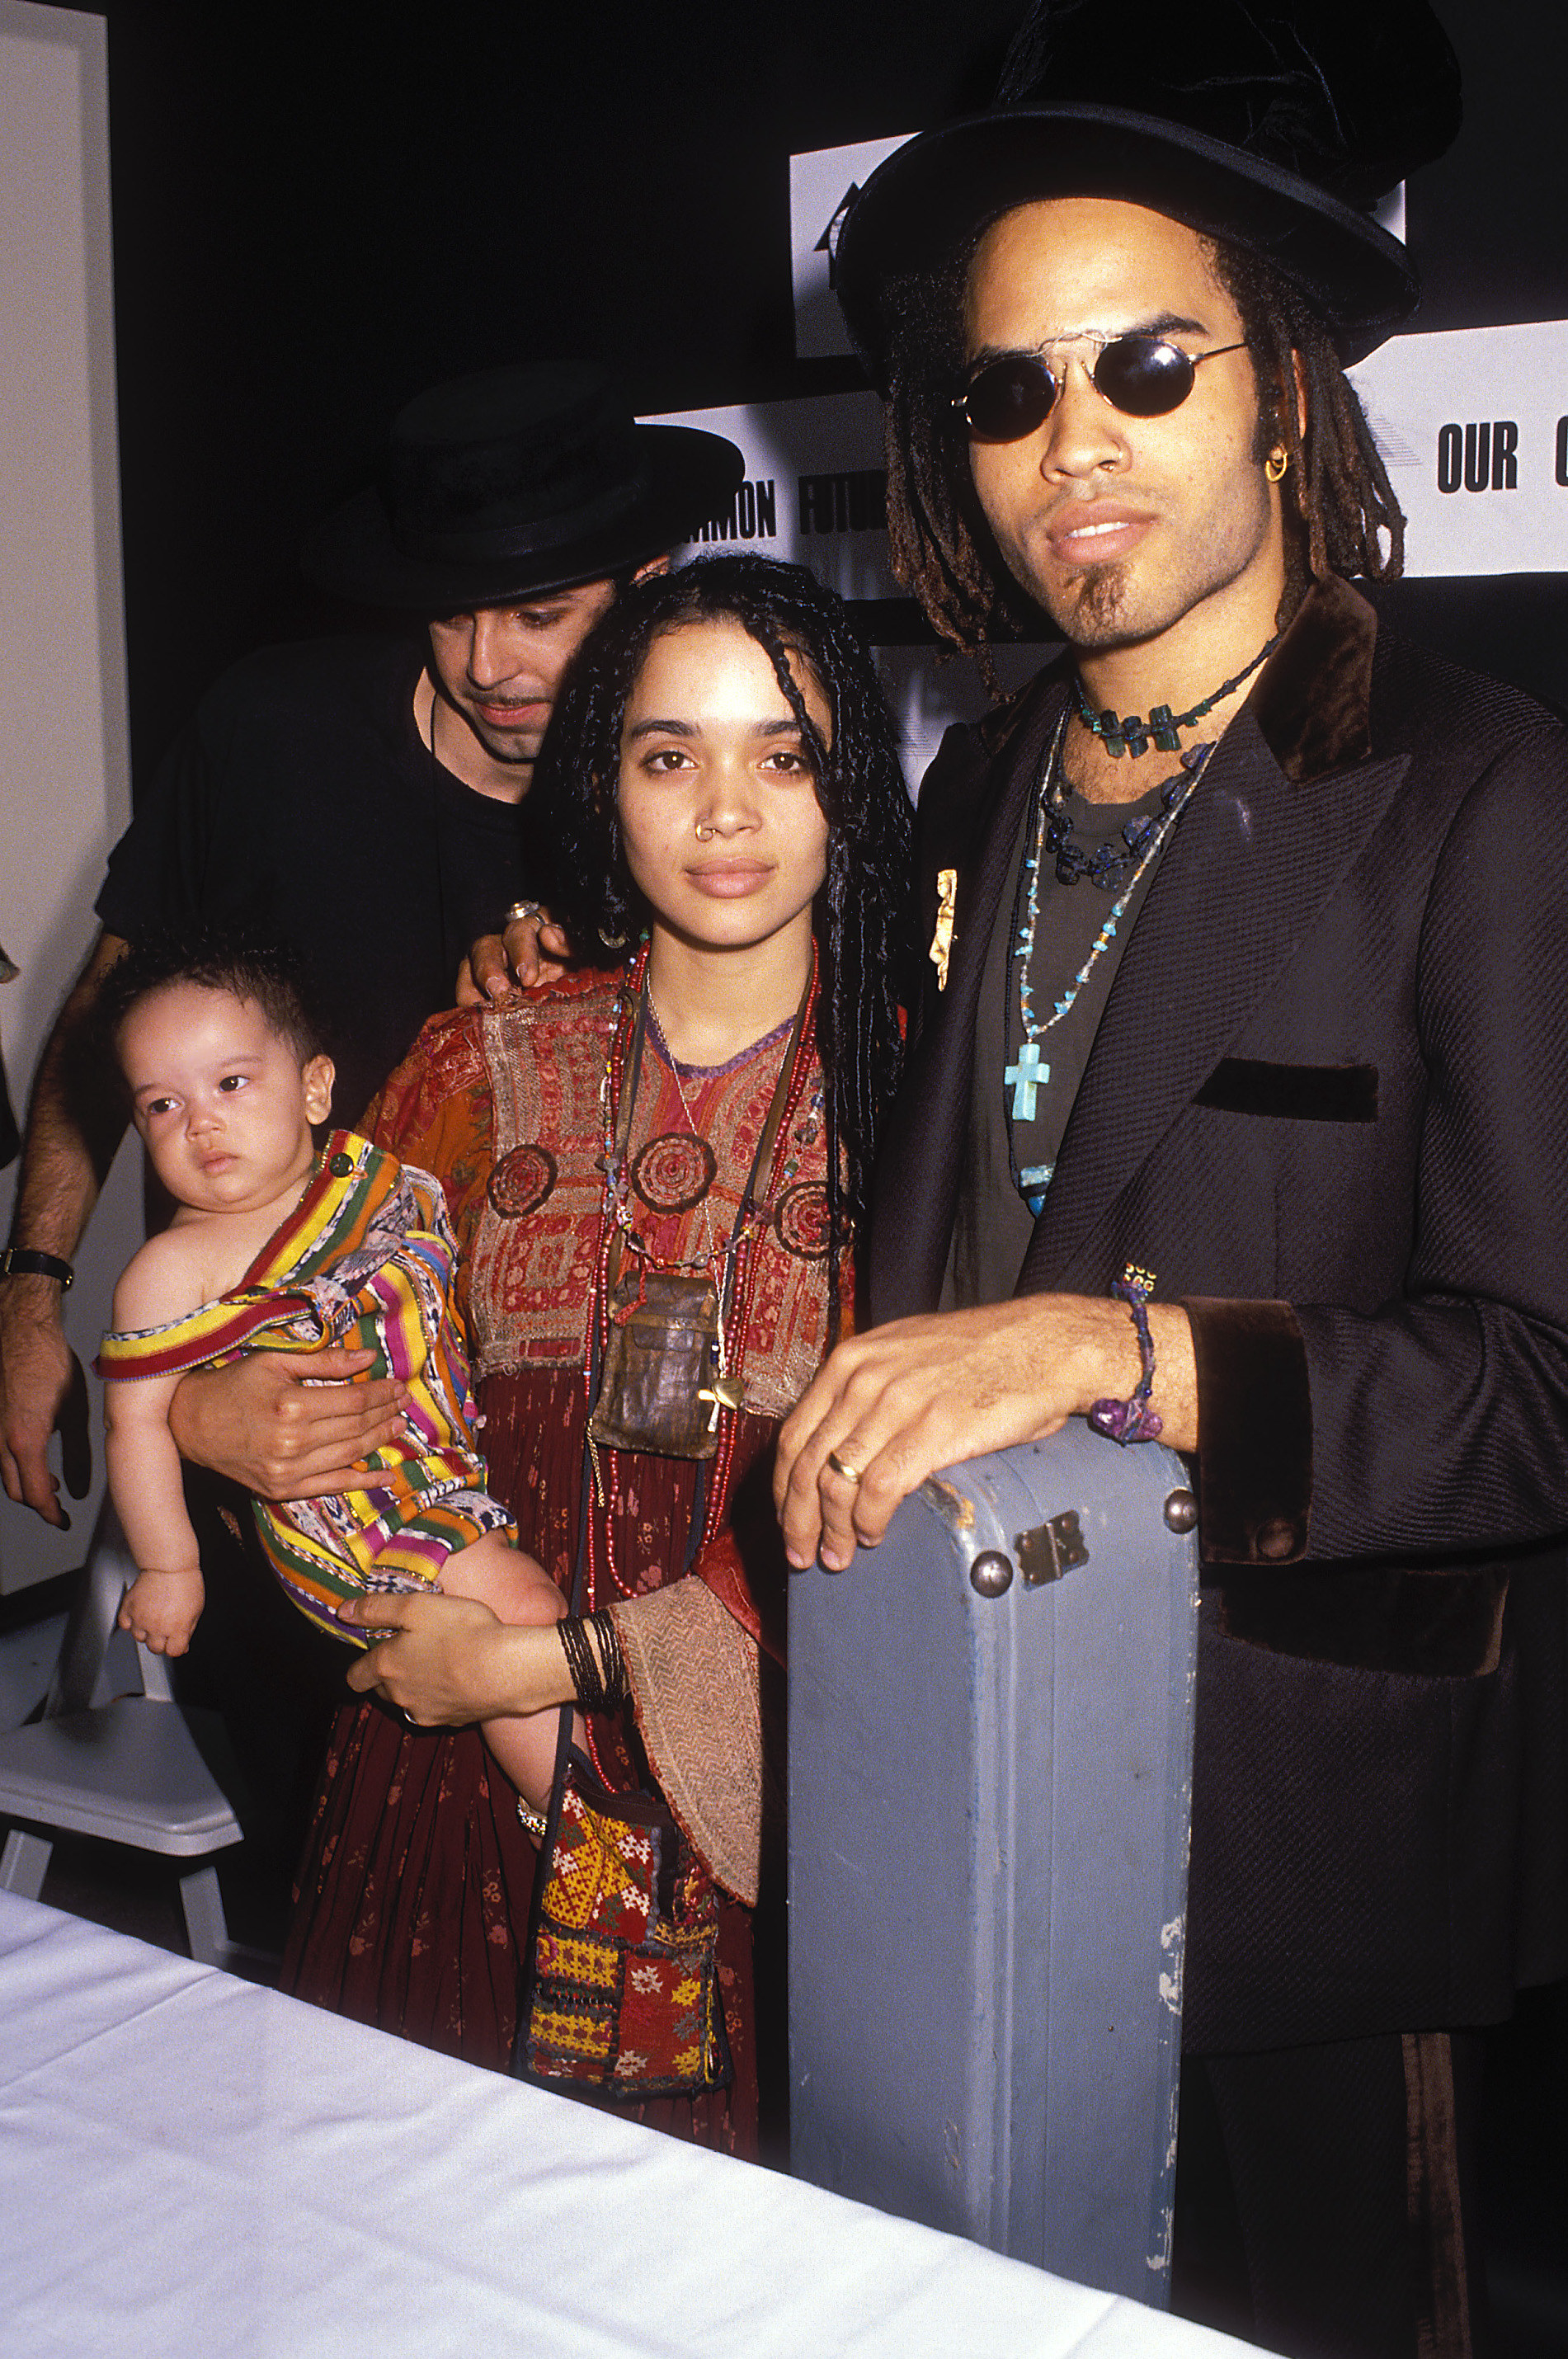 Zoë Kravitz, Lenny Kravitz, and Lisa Bonet at an event in 1989